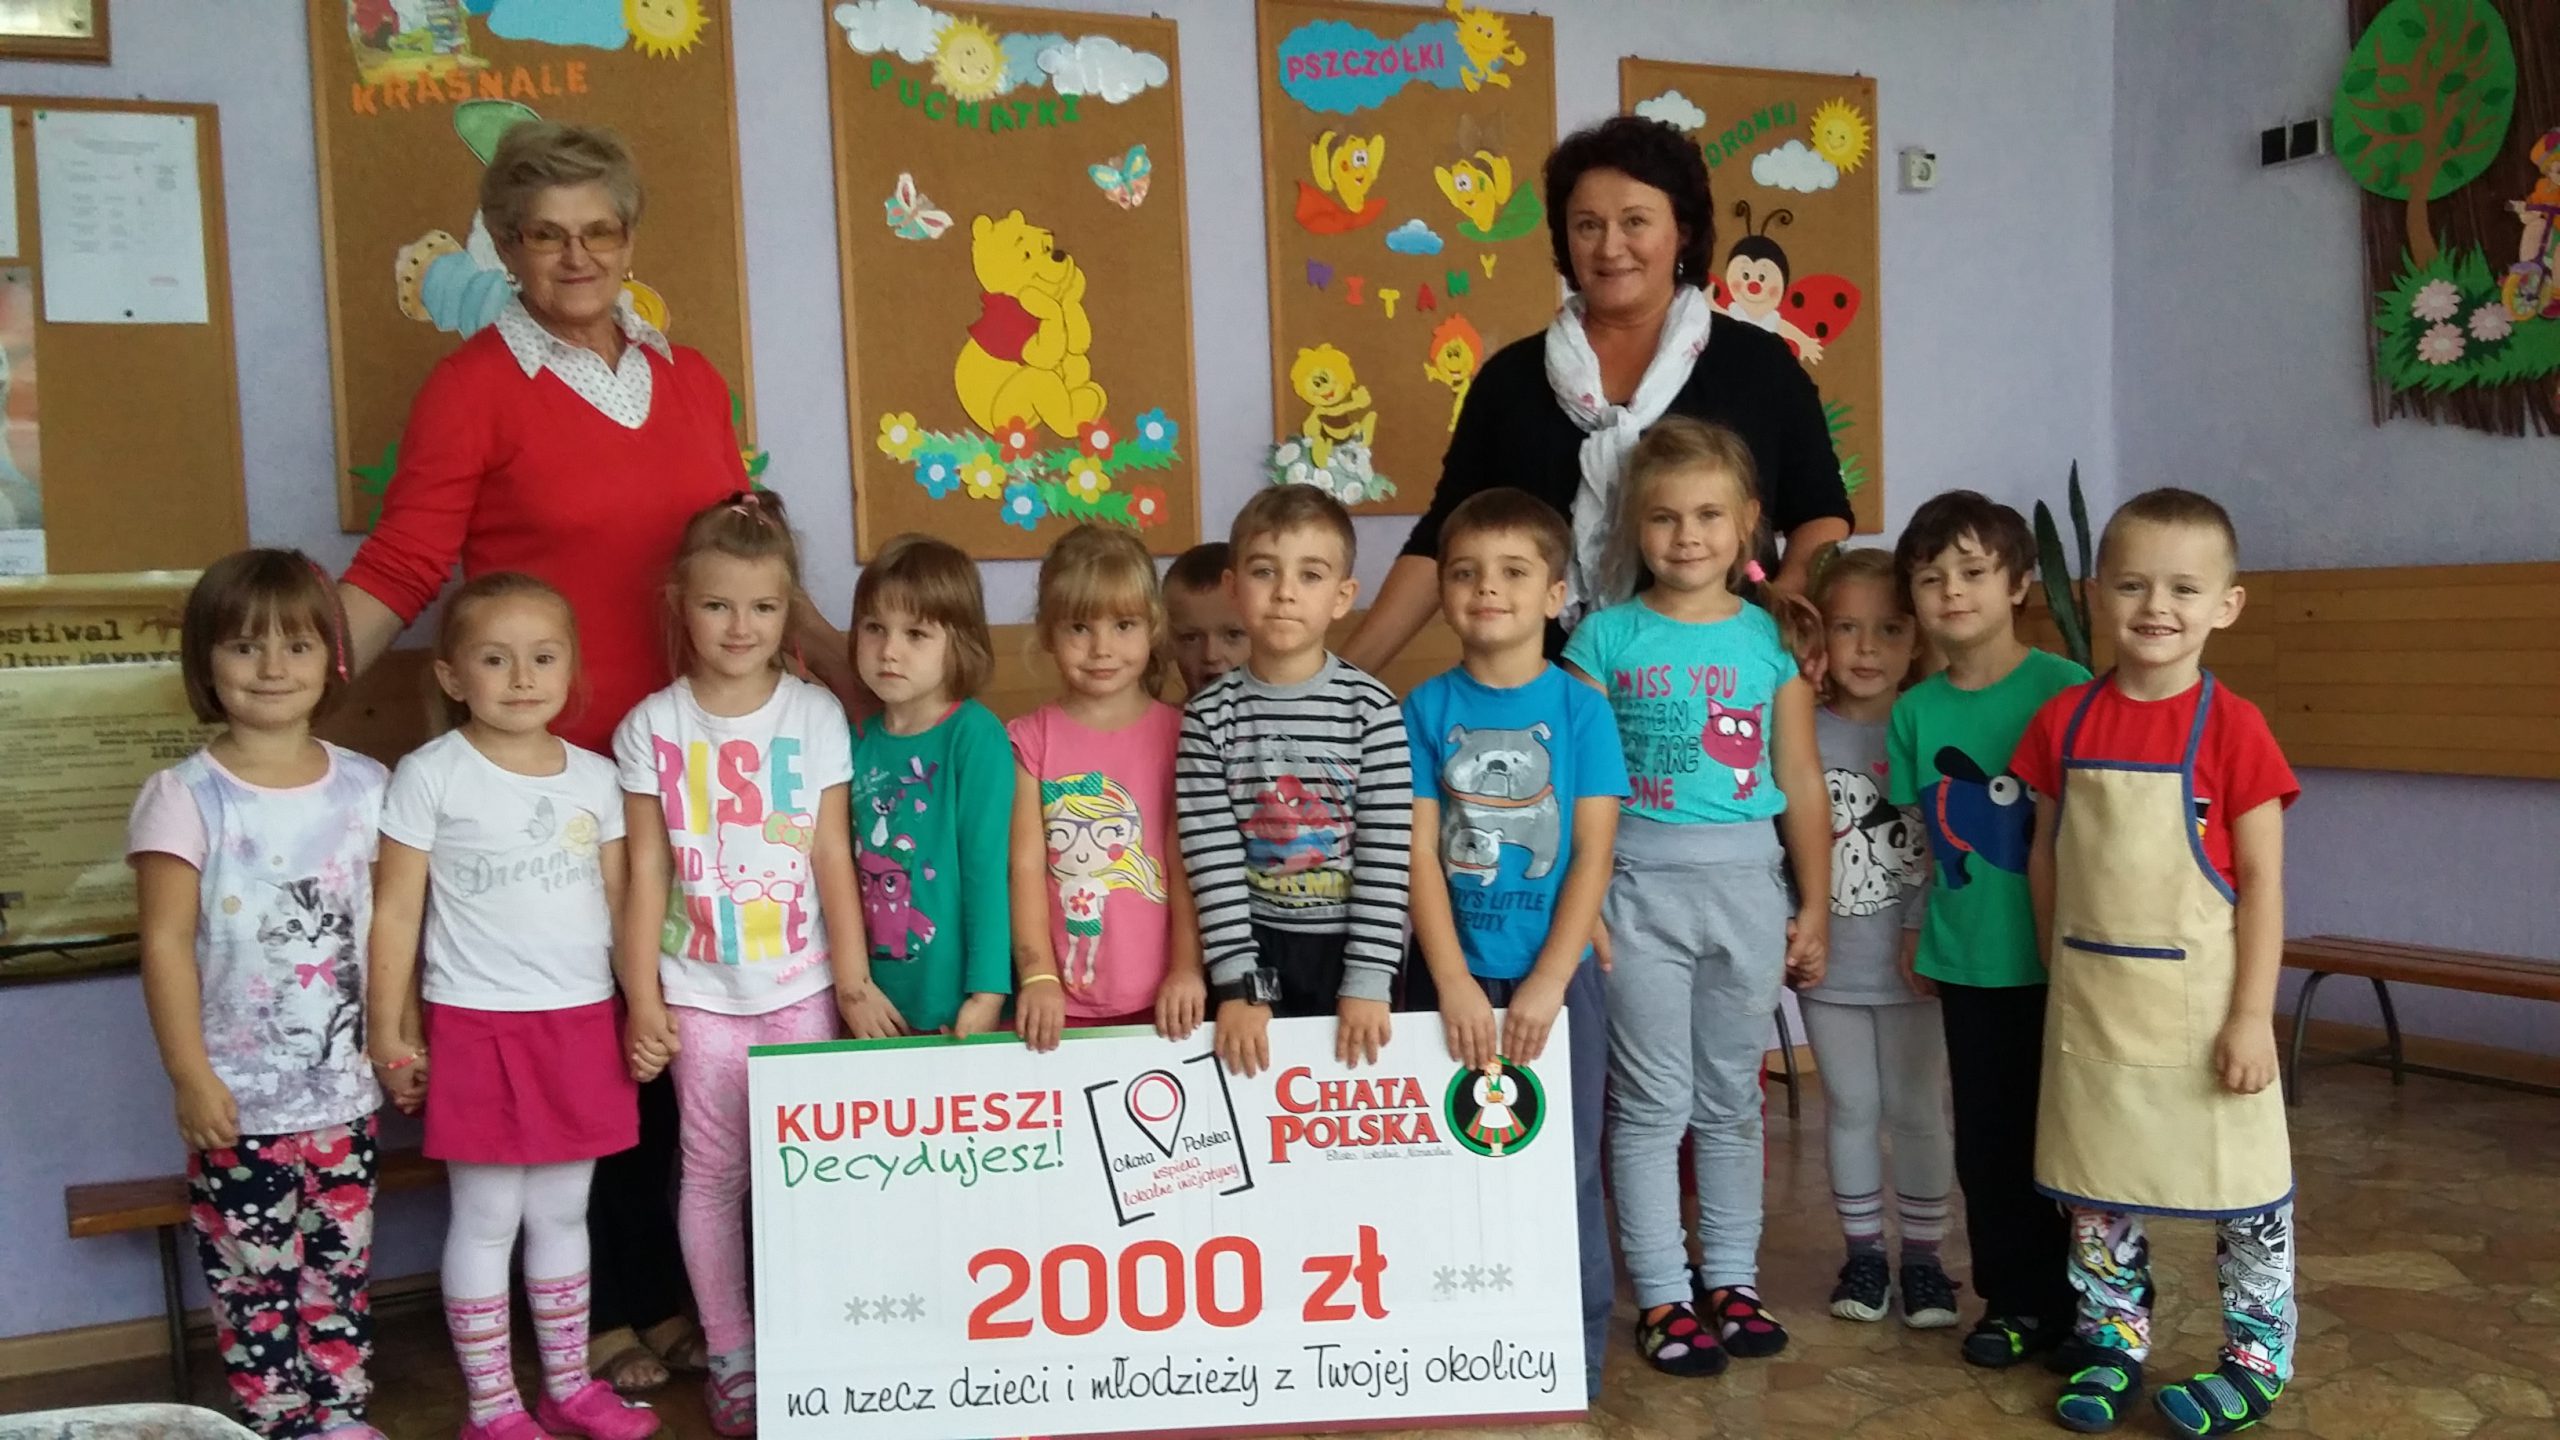 Chata Polska: Kolejne lokalne inicjatywy w Lubuskim